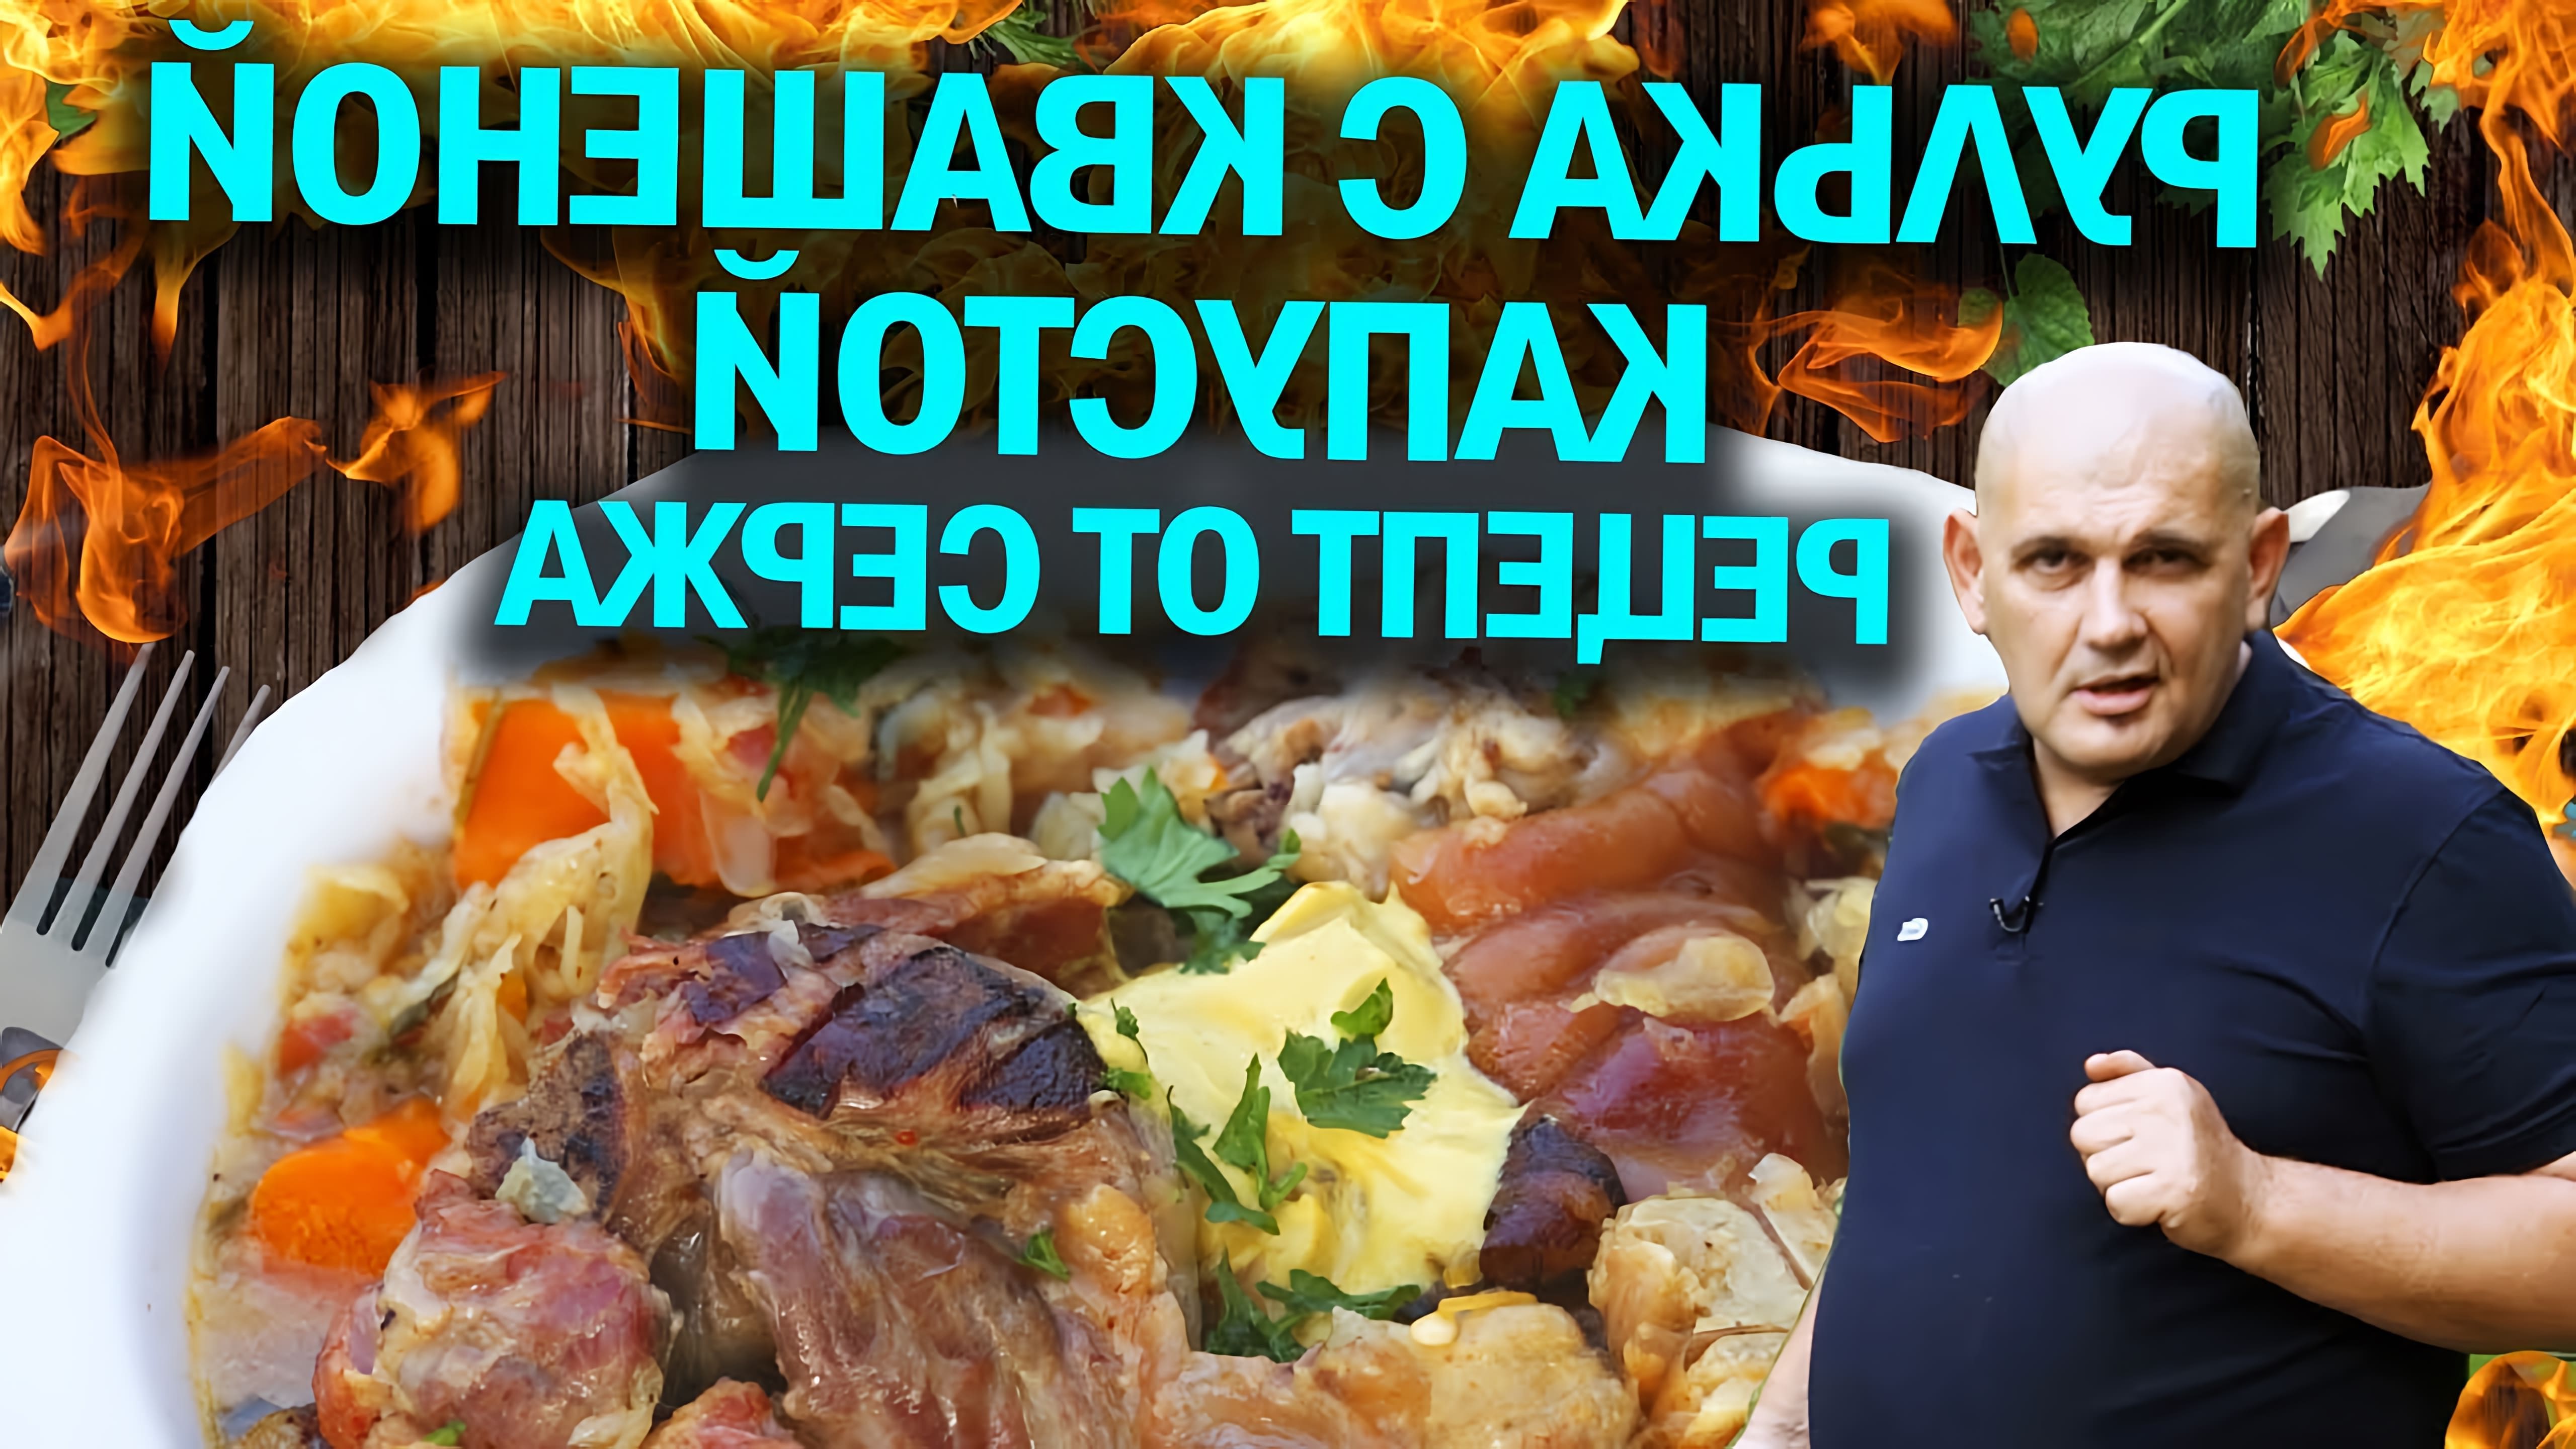 В этом видео-ролике Серж Маркович, известный шеф-повар, делится своим рецептом приготовления рульки с квашеной капустой в афганказане